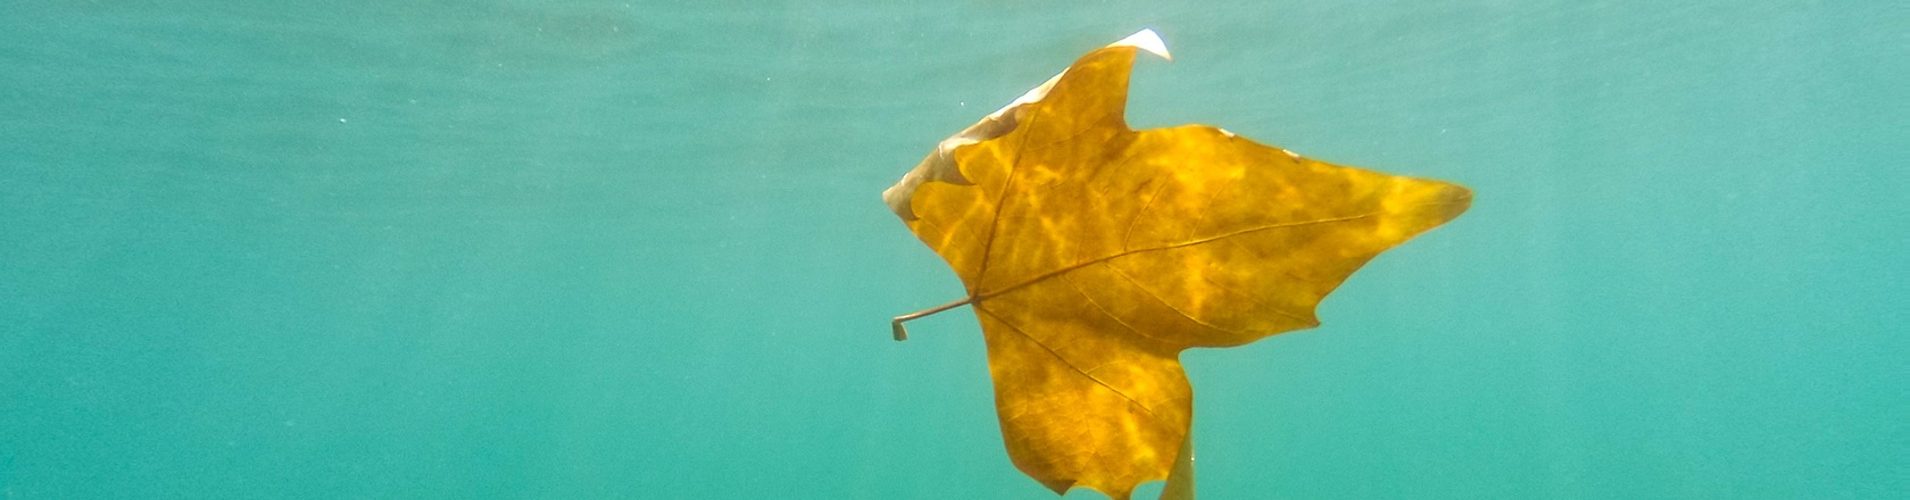 żółty liść w wodzie